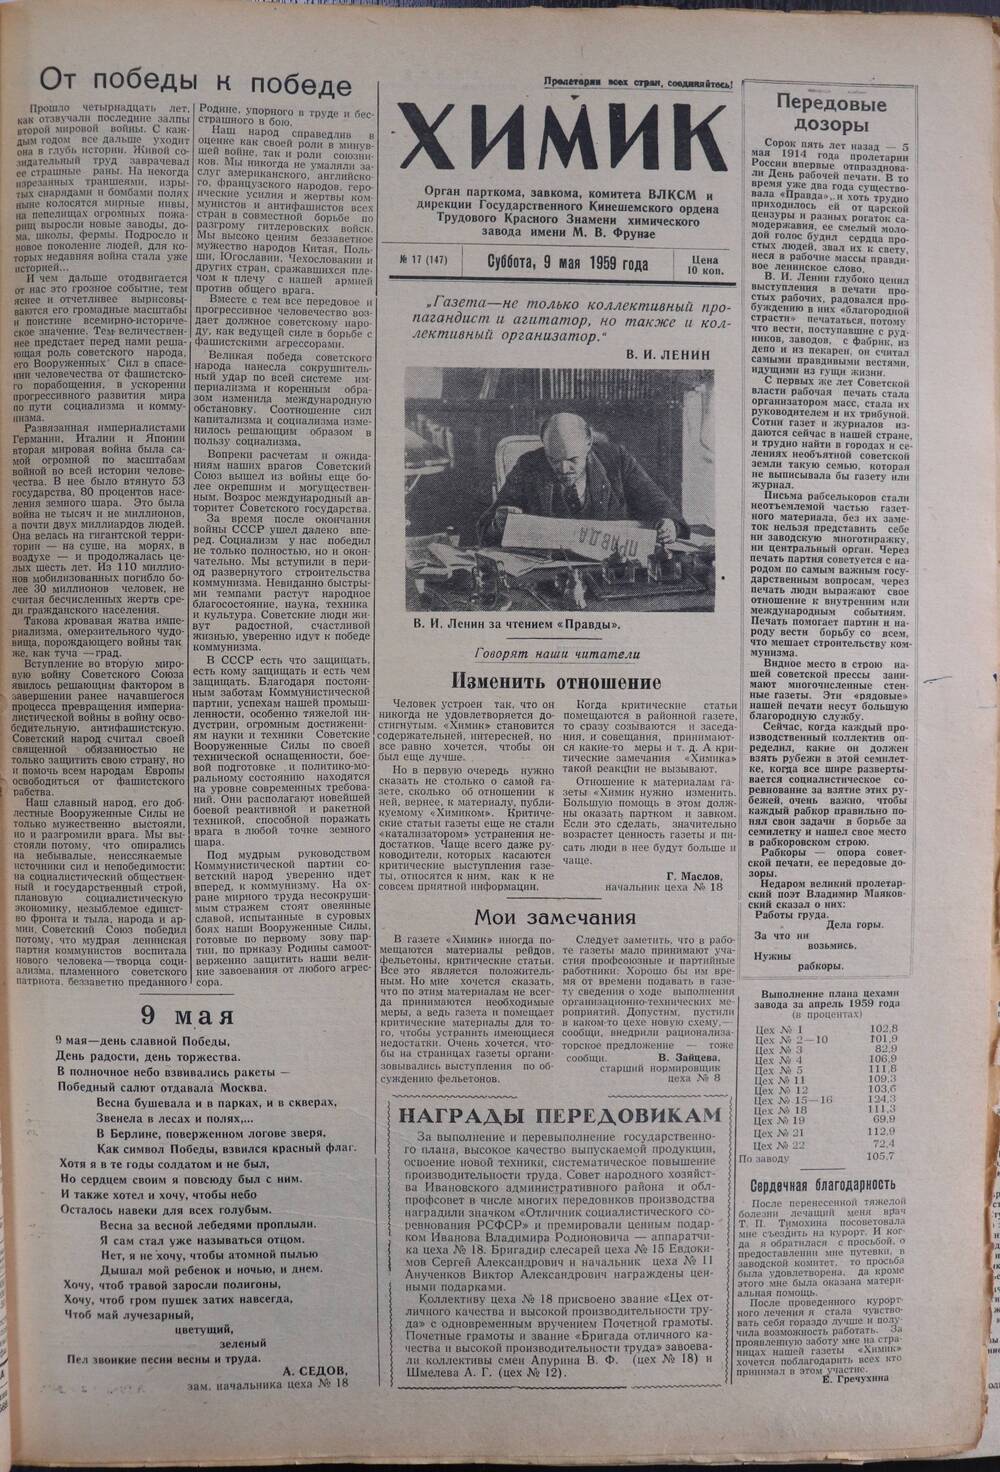 Газета «Химик» № 17 от 9 мая 1959 года.